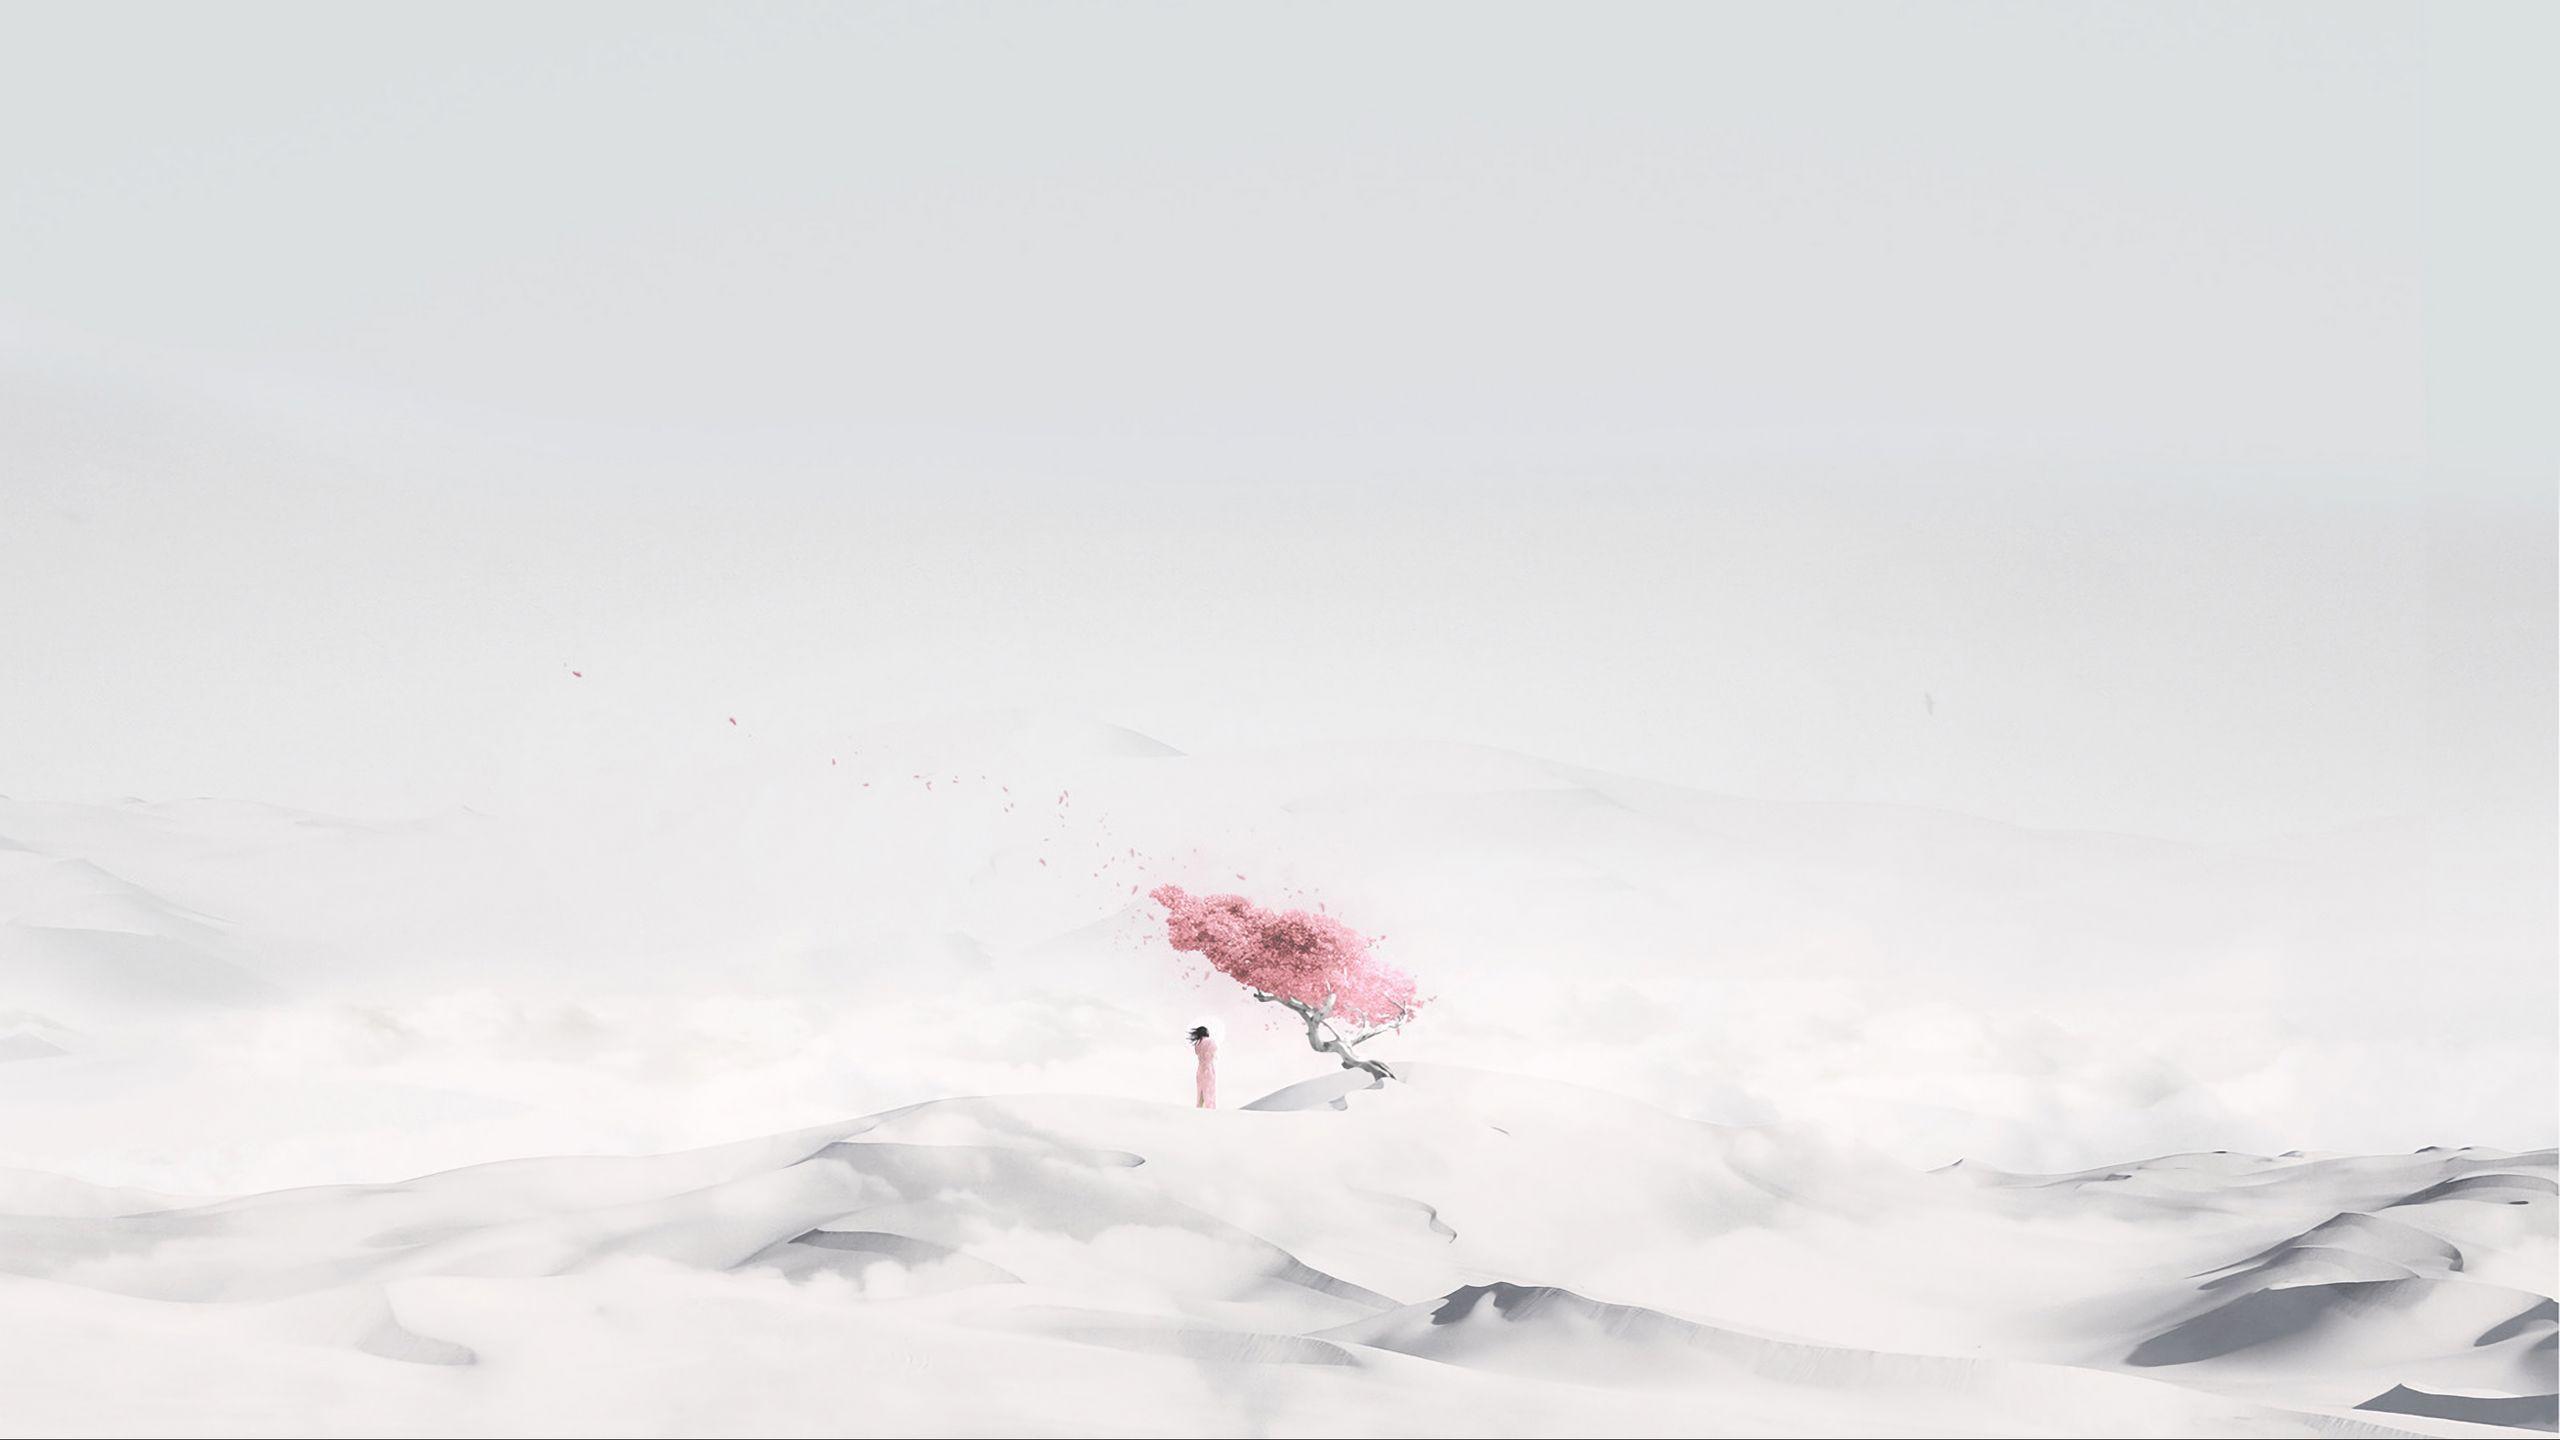 Sakura Minimalist Wallpapers - Top Free Sakura Minimalist Backgrounds